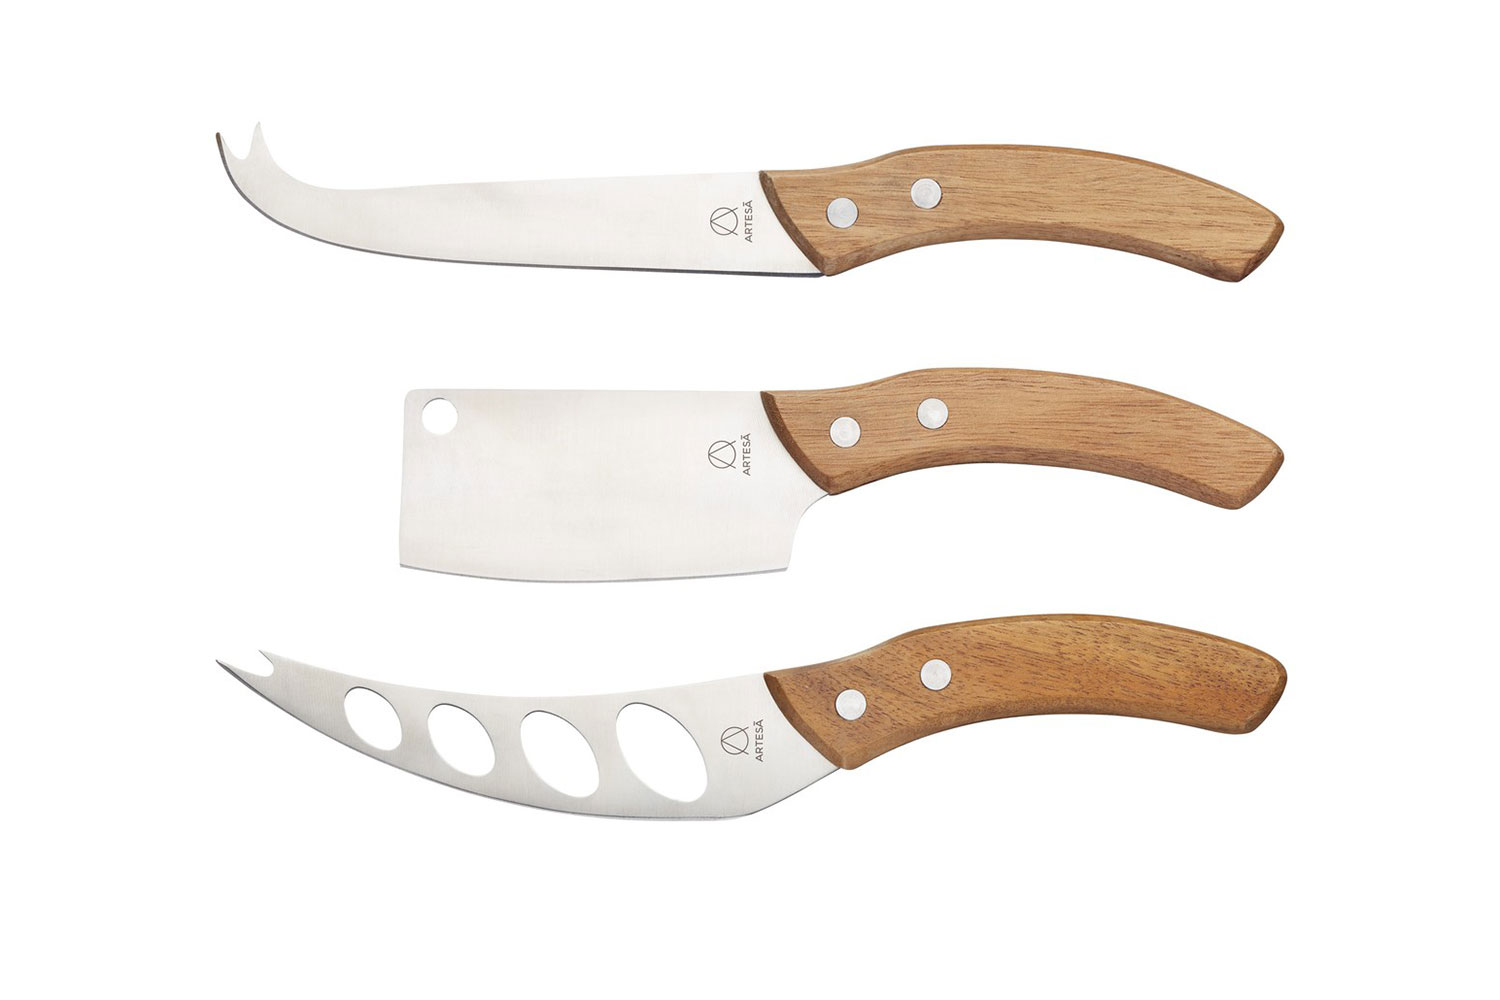 Набор ножей для сыра Artesa